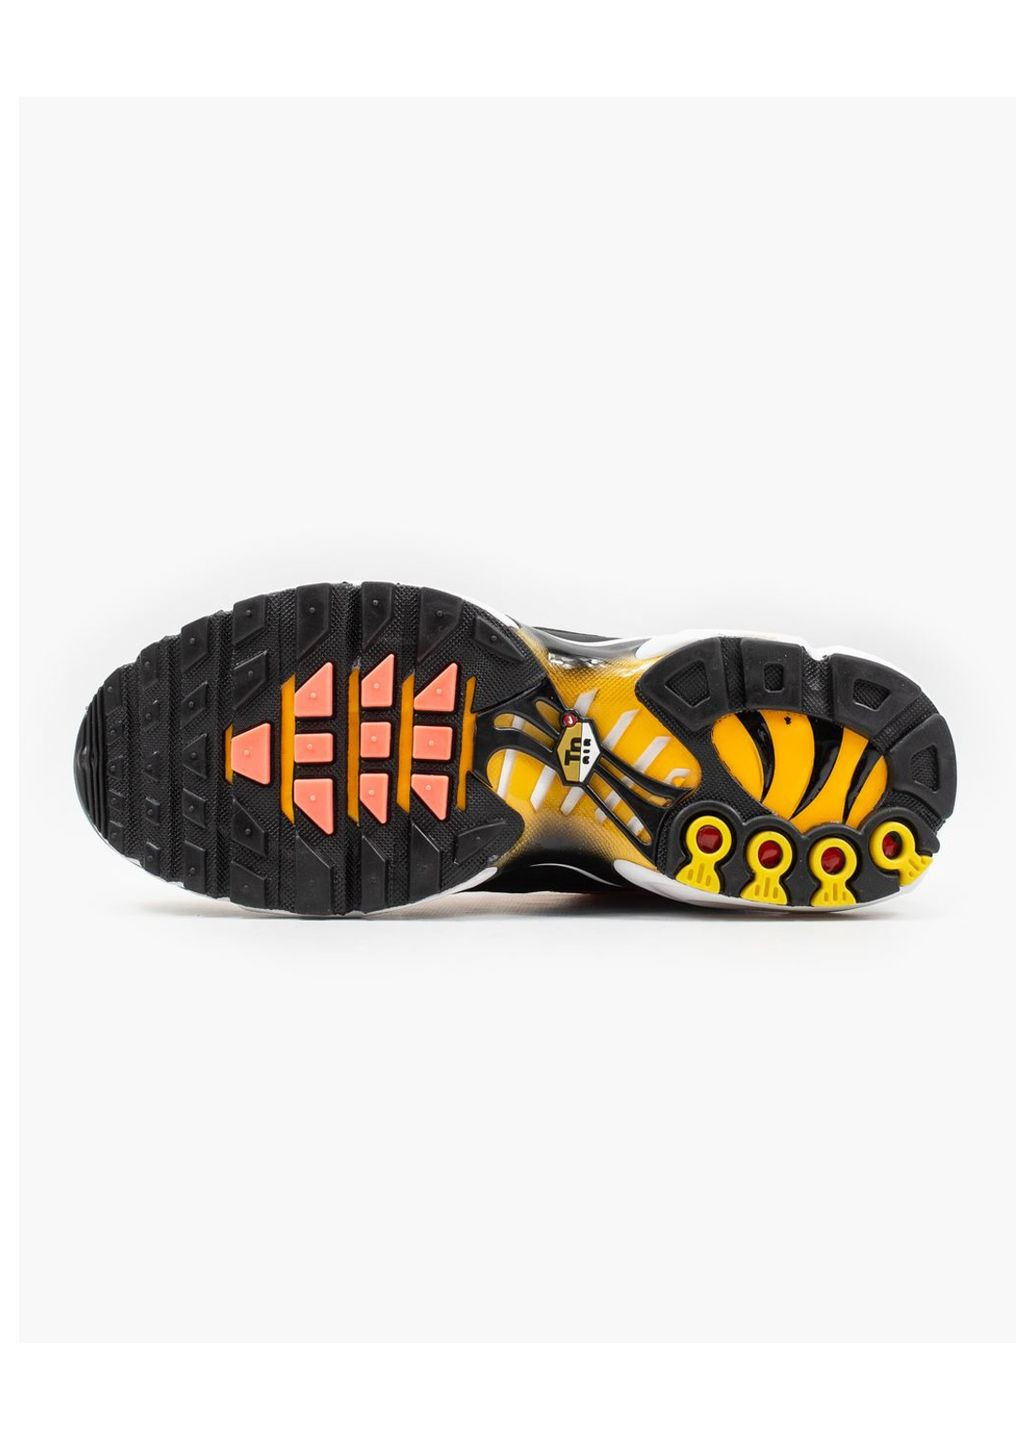 Оранжевые демисезонные кроссовки мужские, вьетнам Nike Air Max Plus OG Tn Tiger